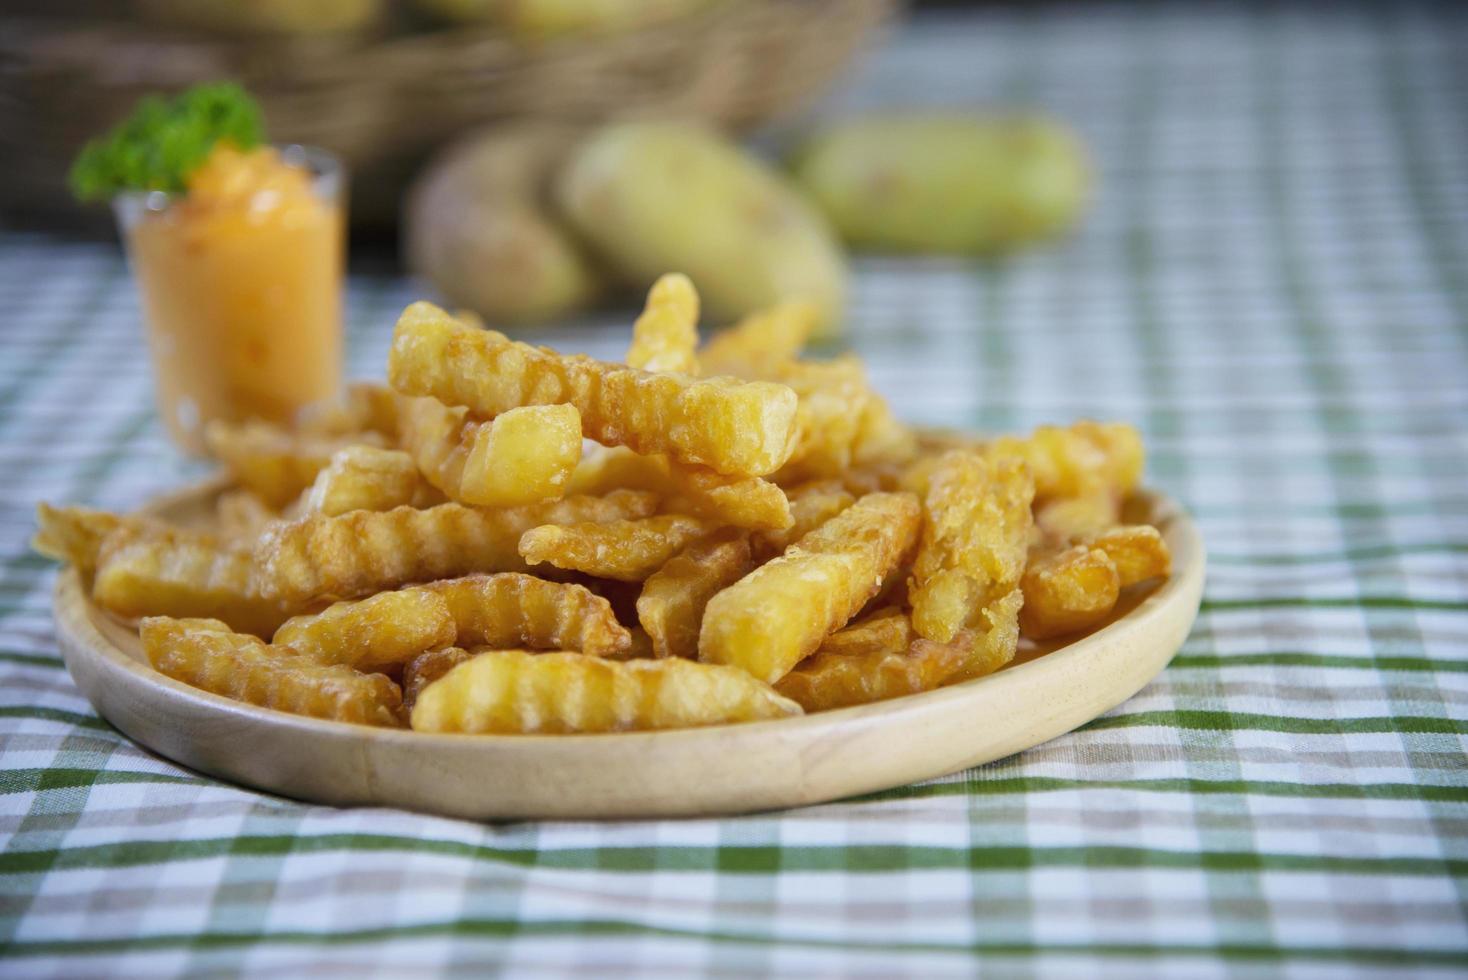 Köstliche Bratkartoffeln auf Holzteller mit eingetauchter Sauce - traditionelles Fast-Food-Konzept foto